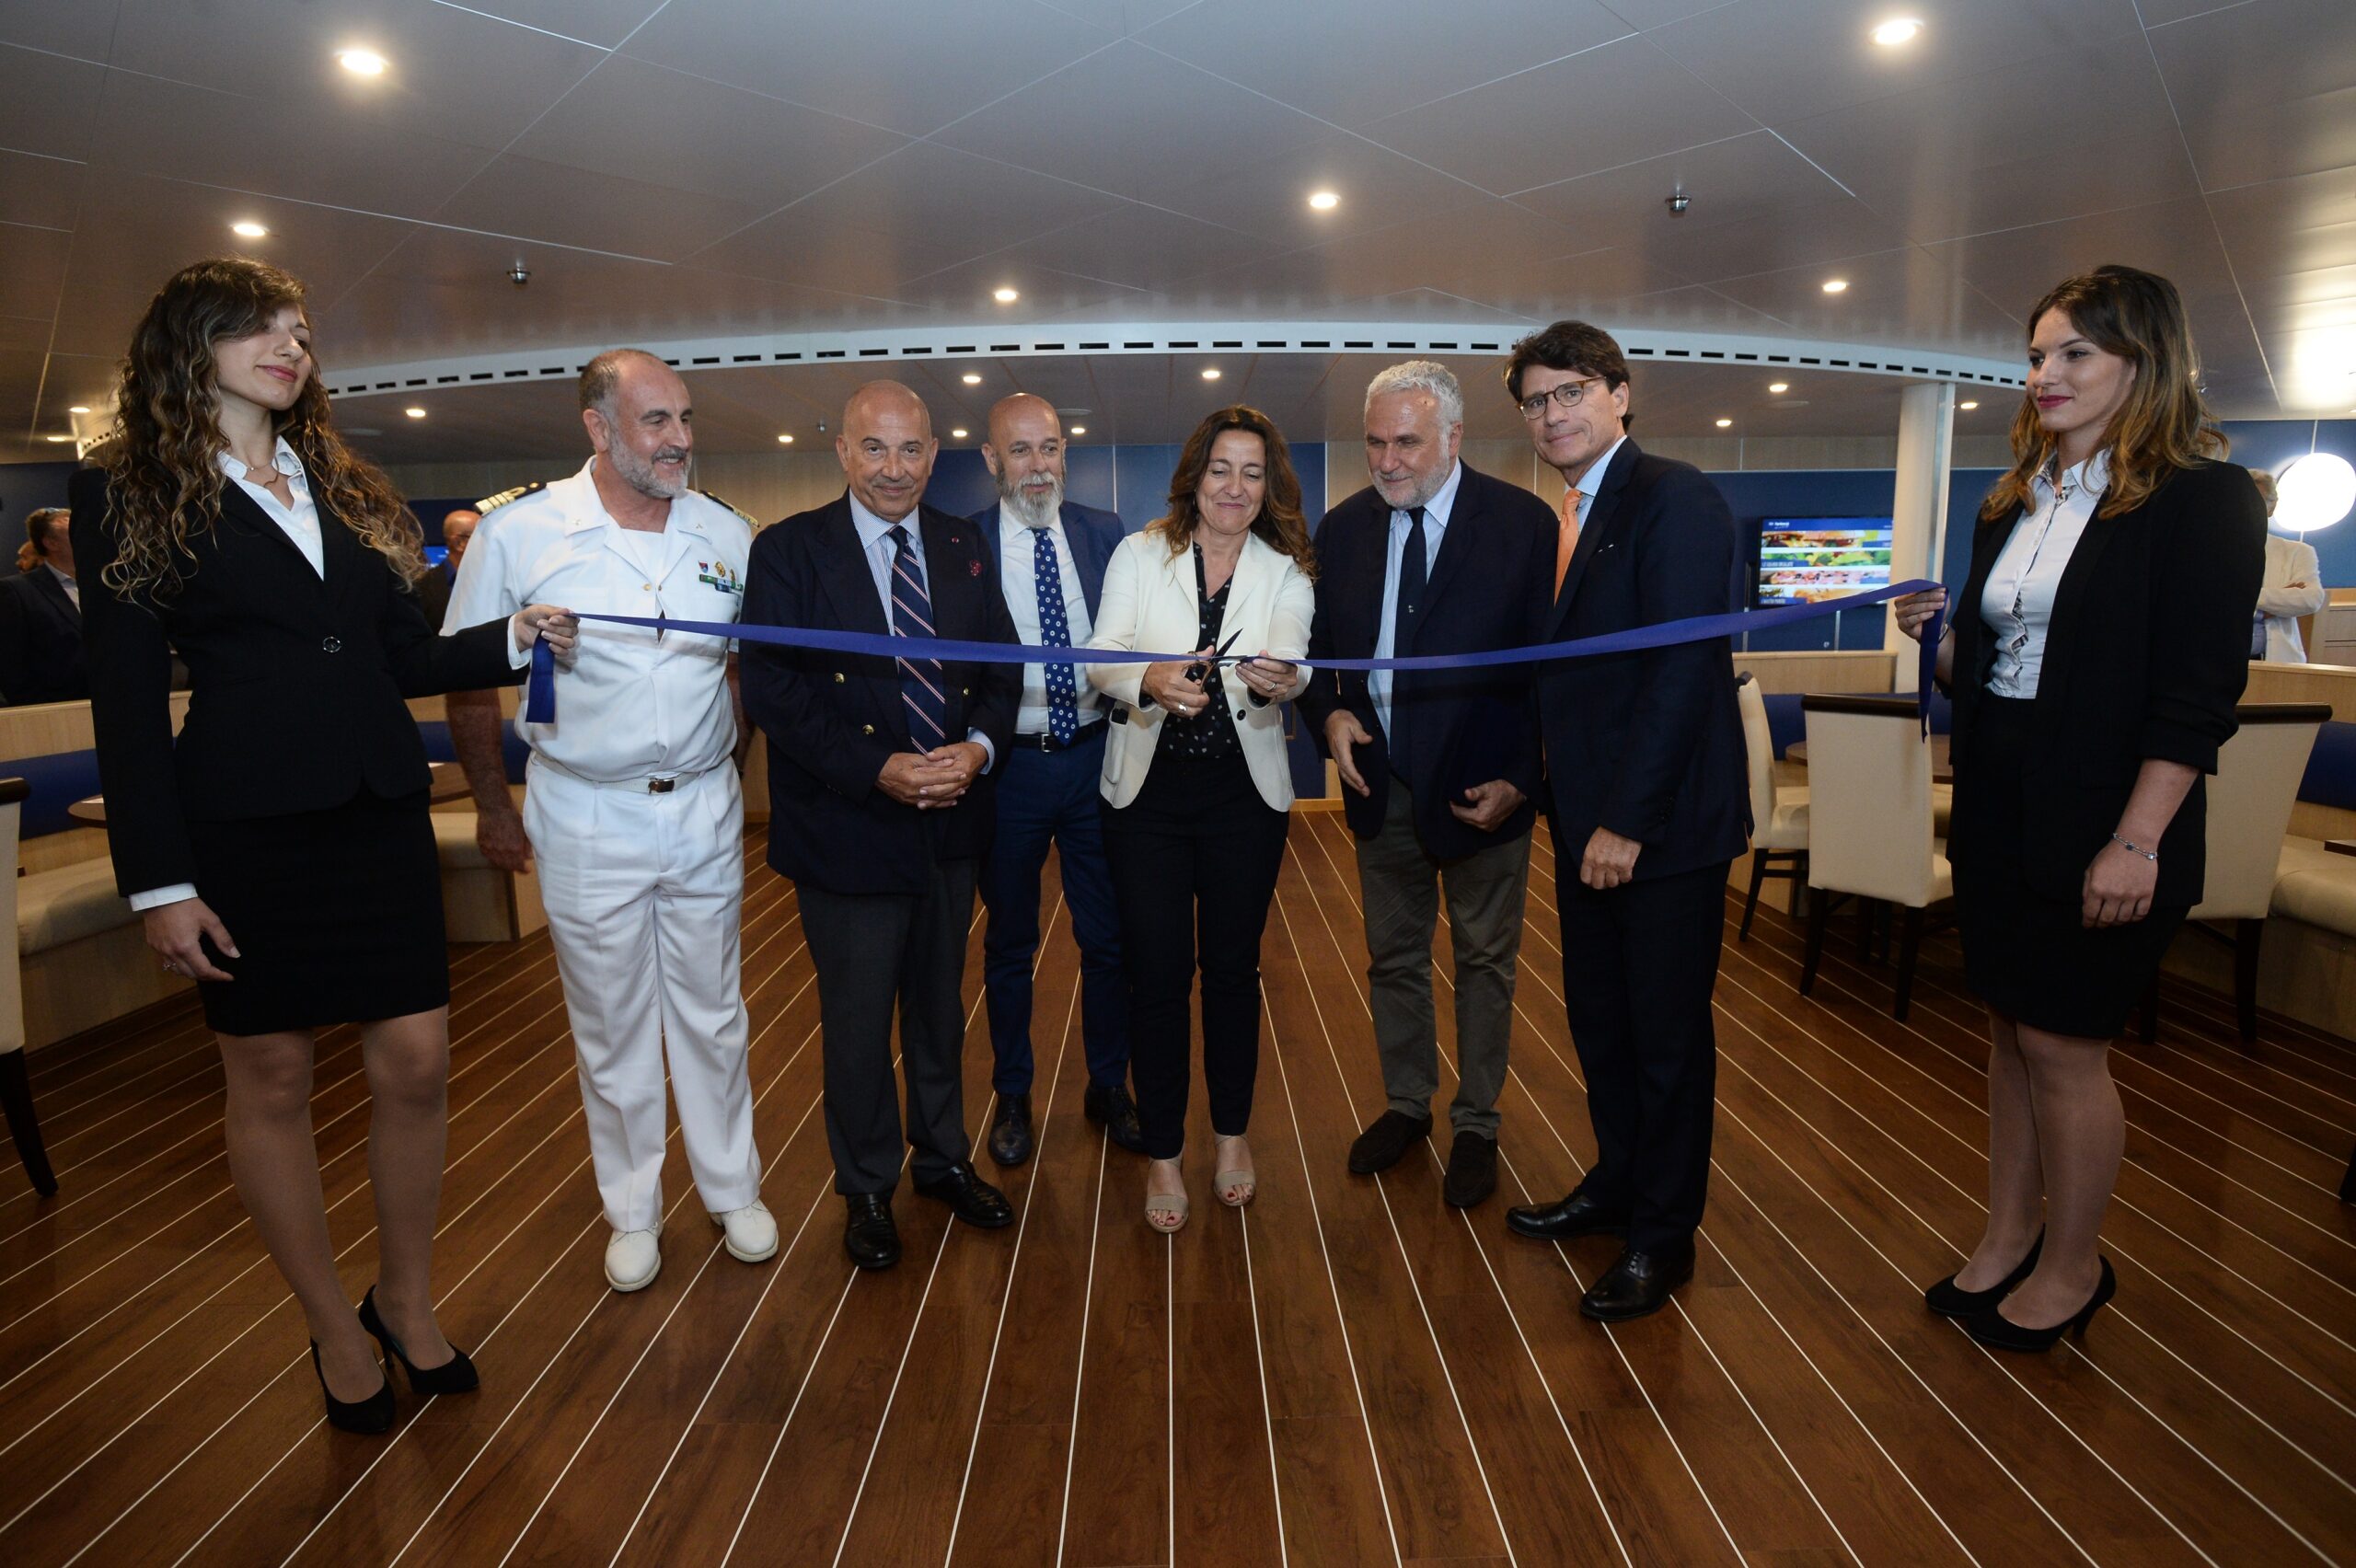 Gruppo Grimaldi presenta la nuova Cruise Roma: è la prima nave del Mediterraneo con zero emissioni in porto